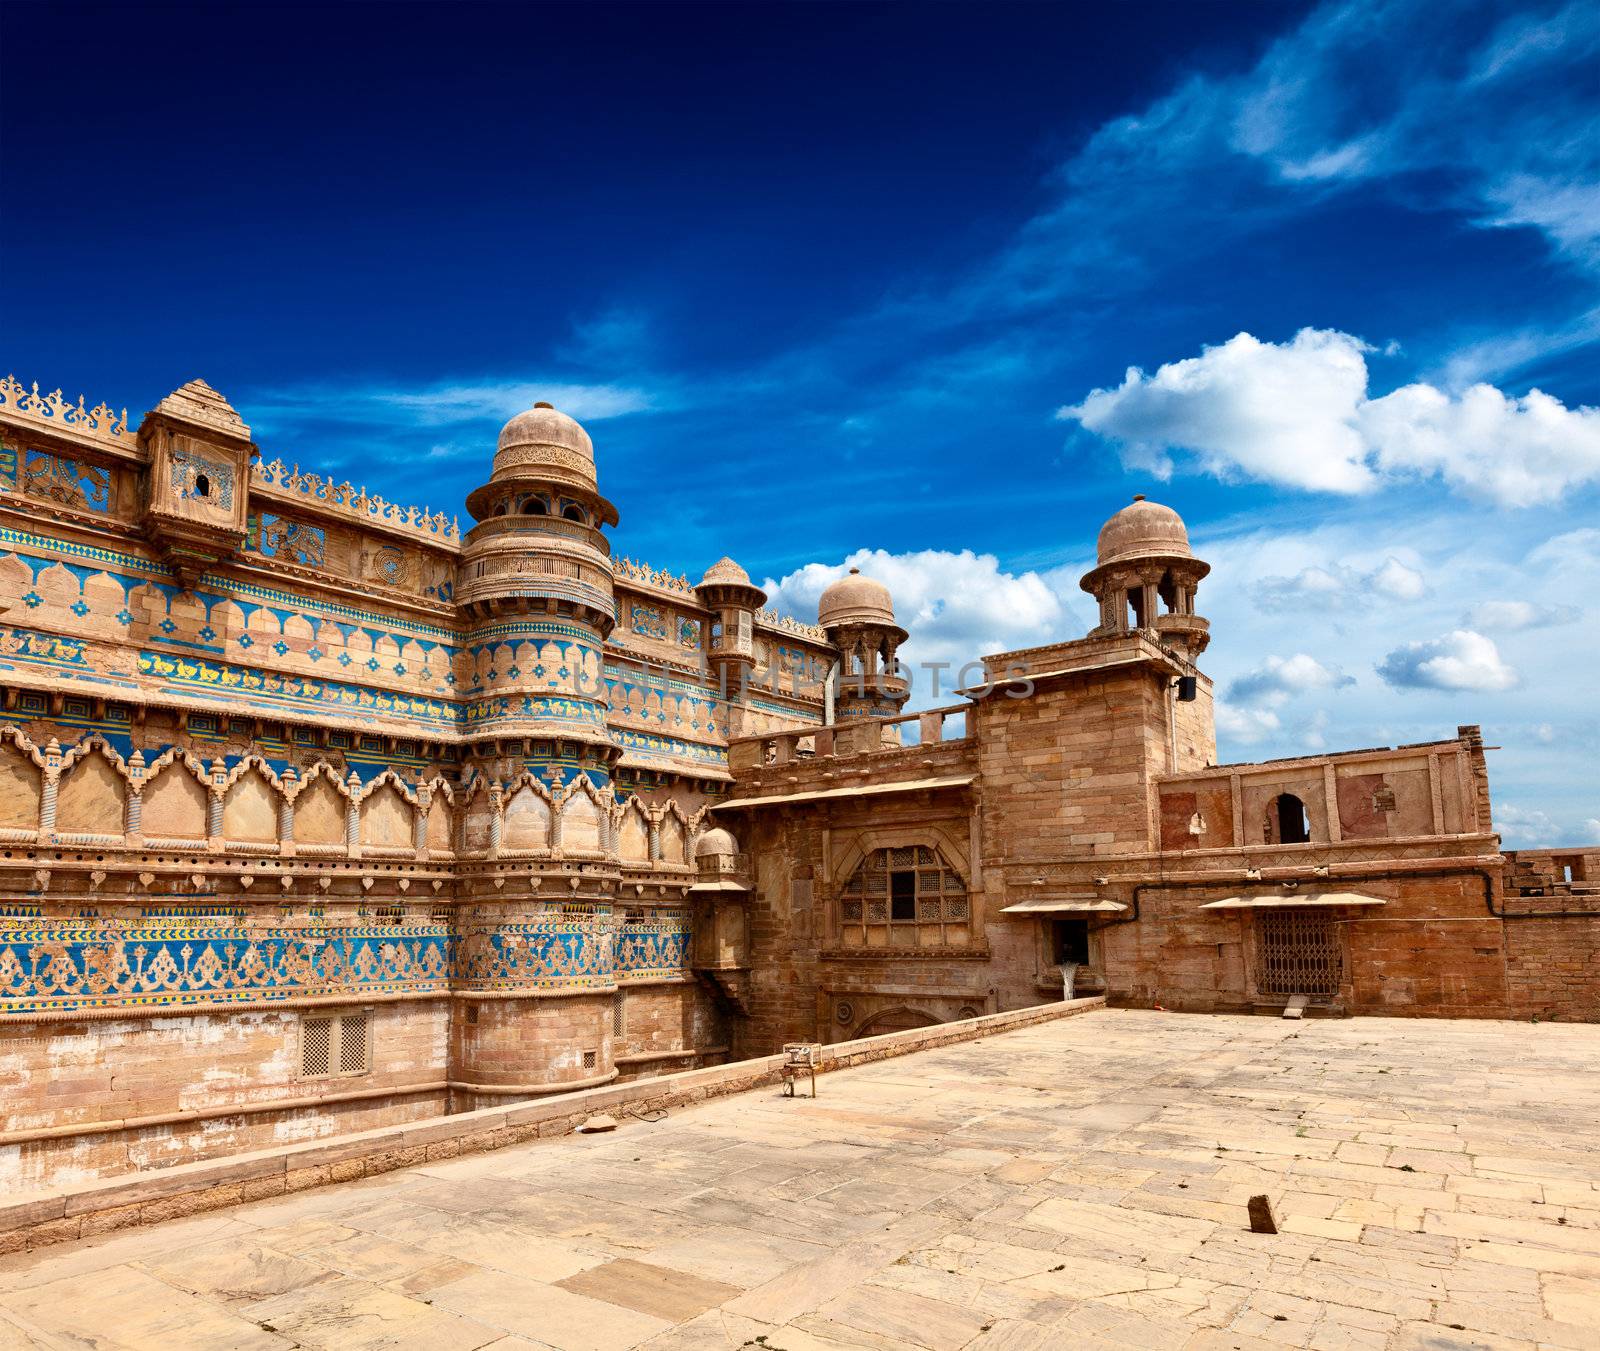 Gwalior fort, India by dimol